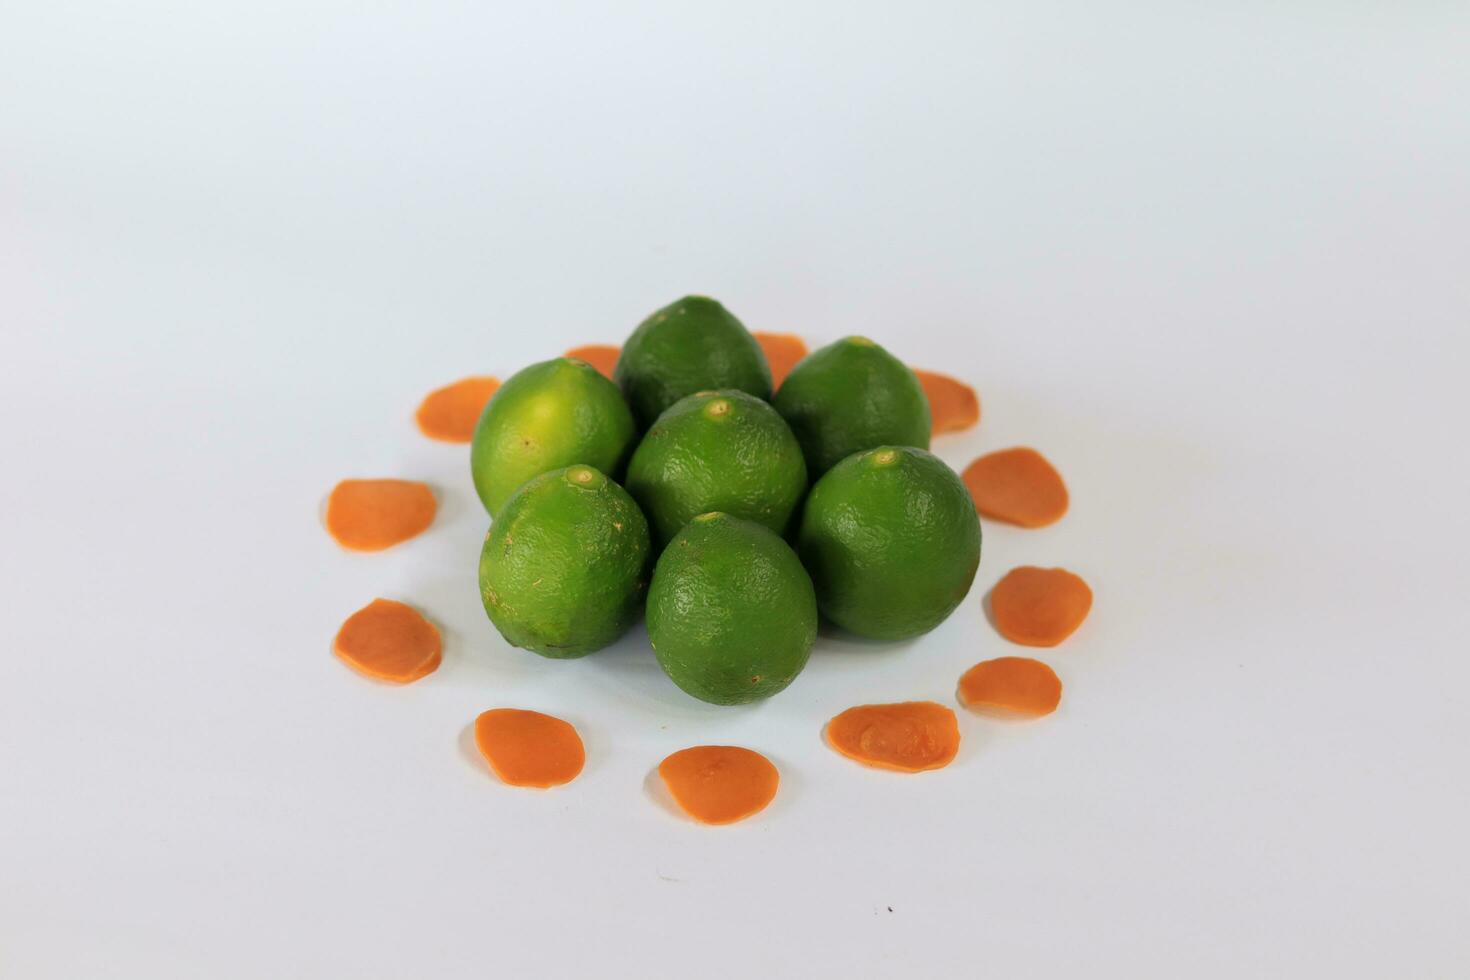 grön citroner med på en vit bakgrund foto